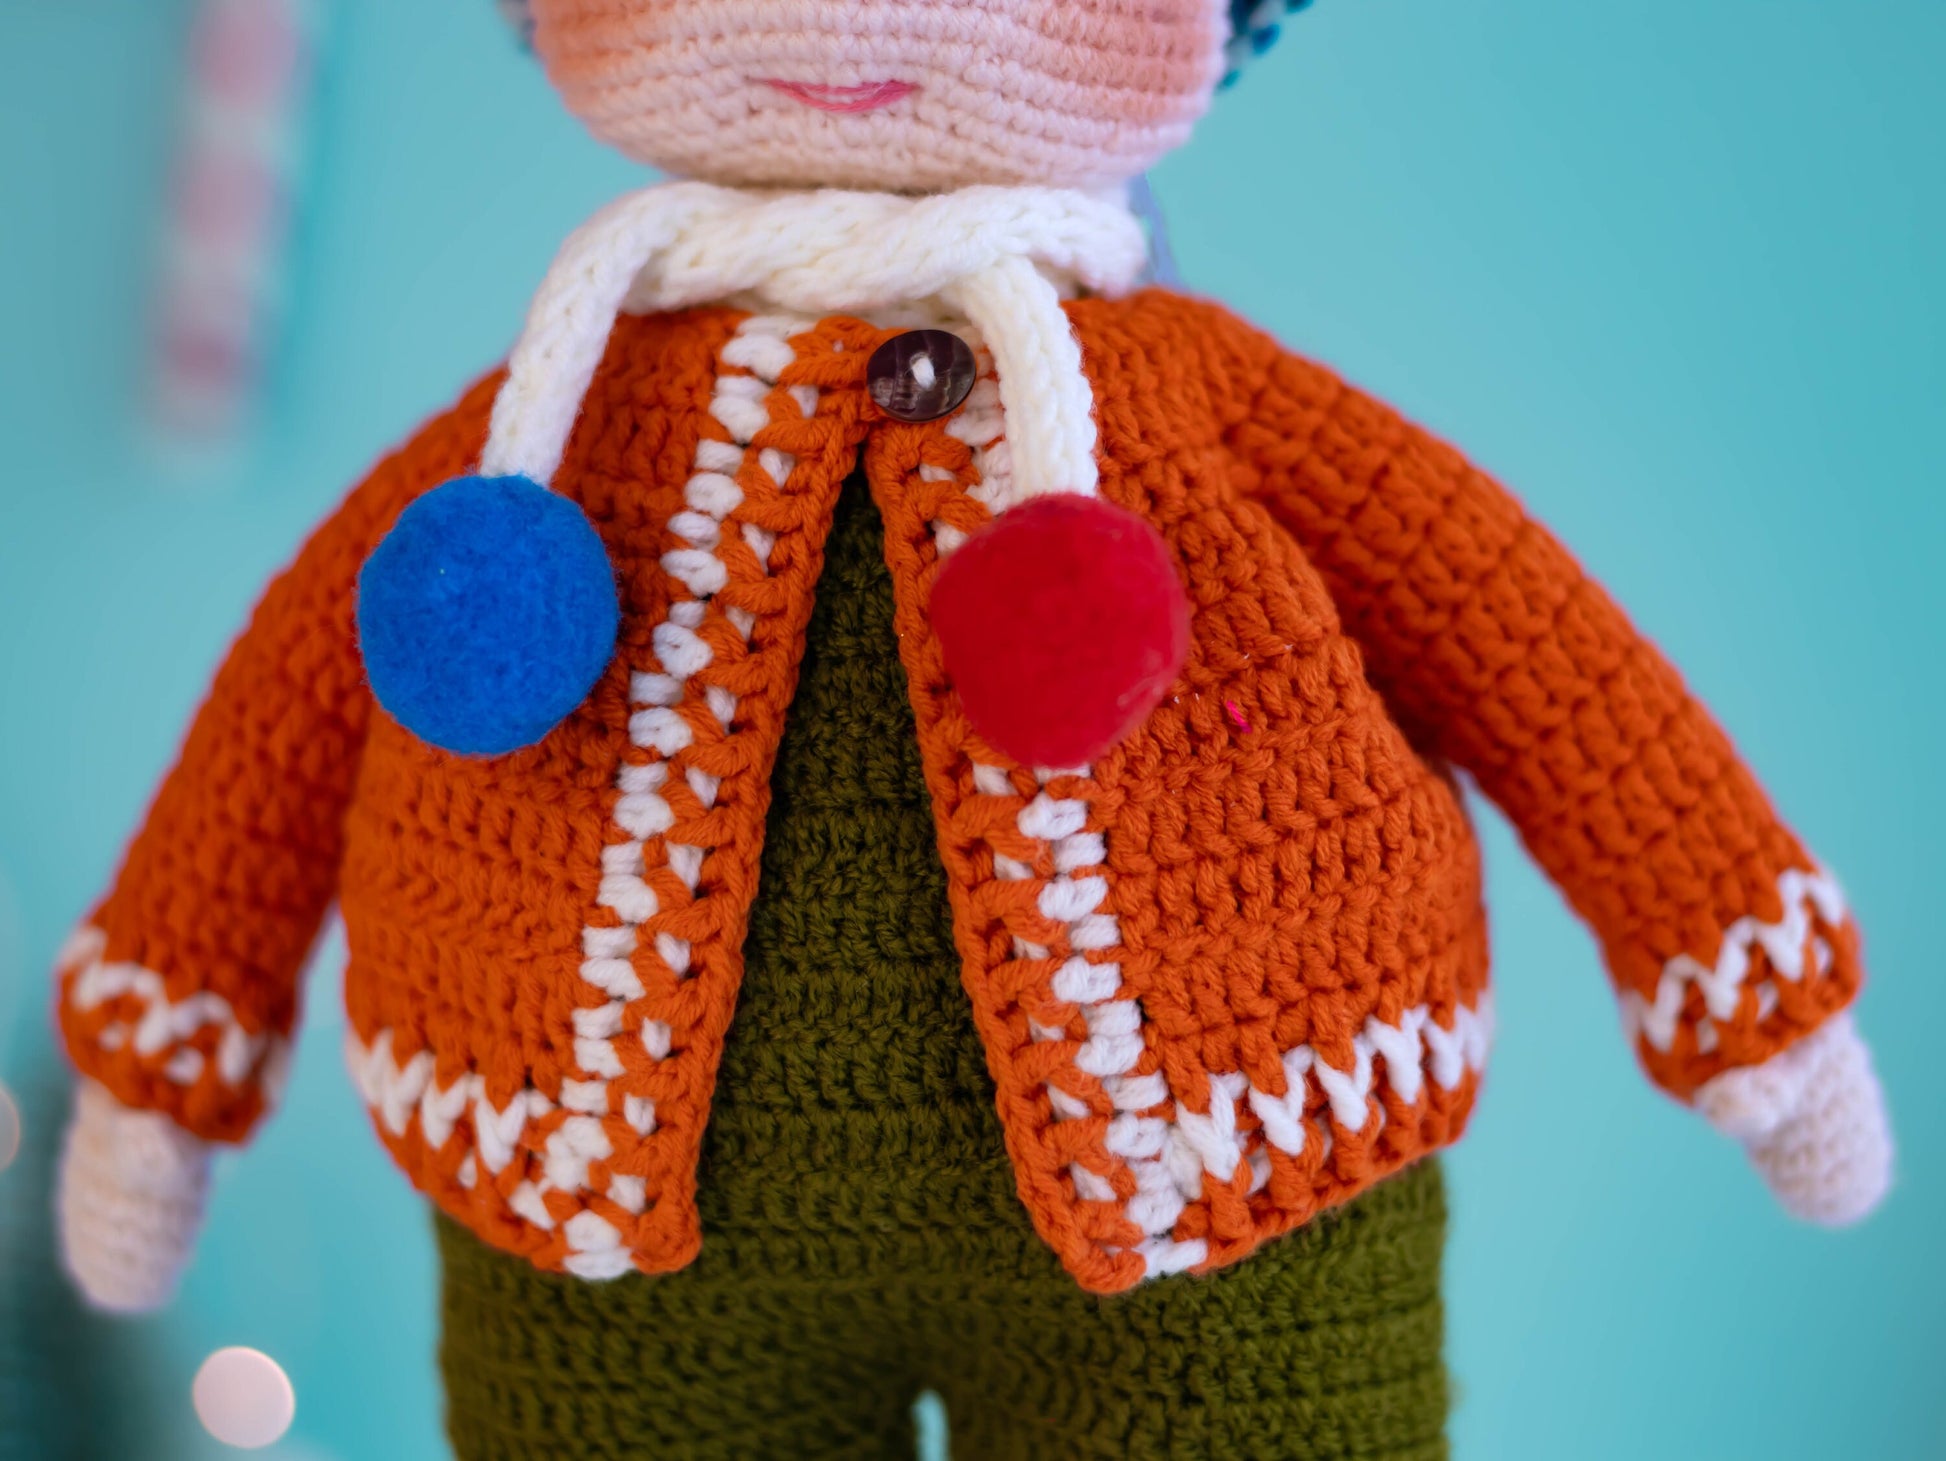 Amigurumi Boy Dale, Crochet Doll Boy, Knit Boy Doll, Toddler Gift, Crochet Doll Amigurumi, Nephew Gifts, Handmade Doll, Hand Made Doll Cute